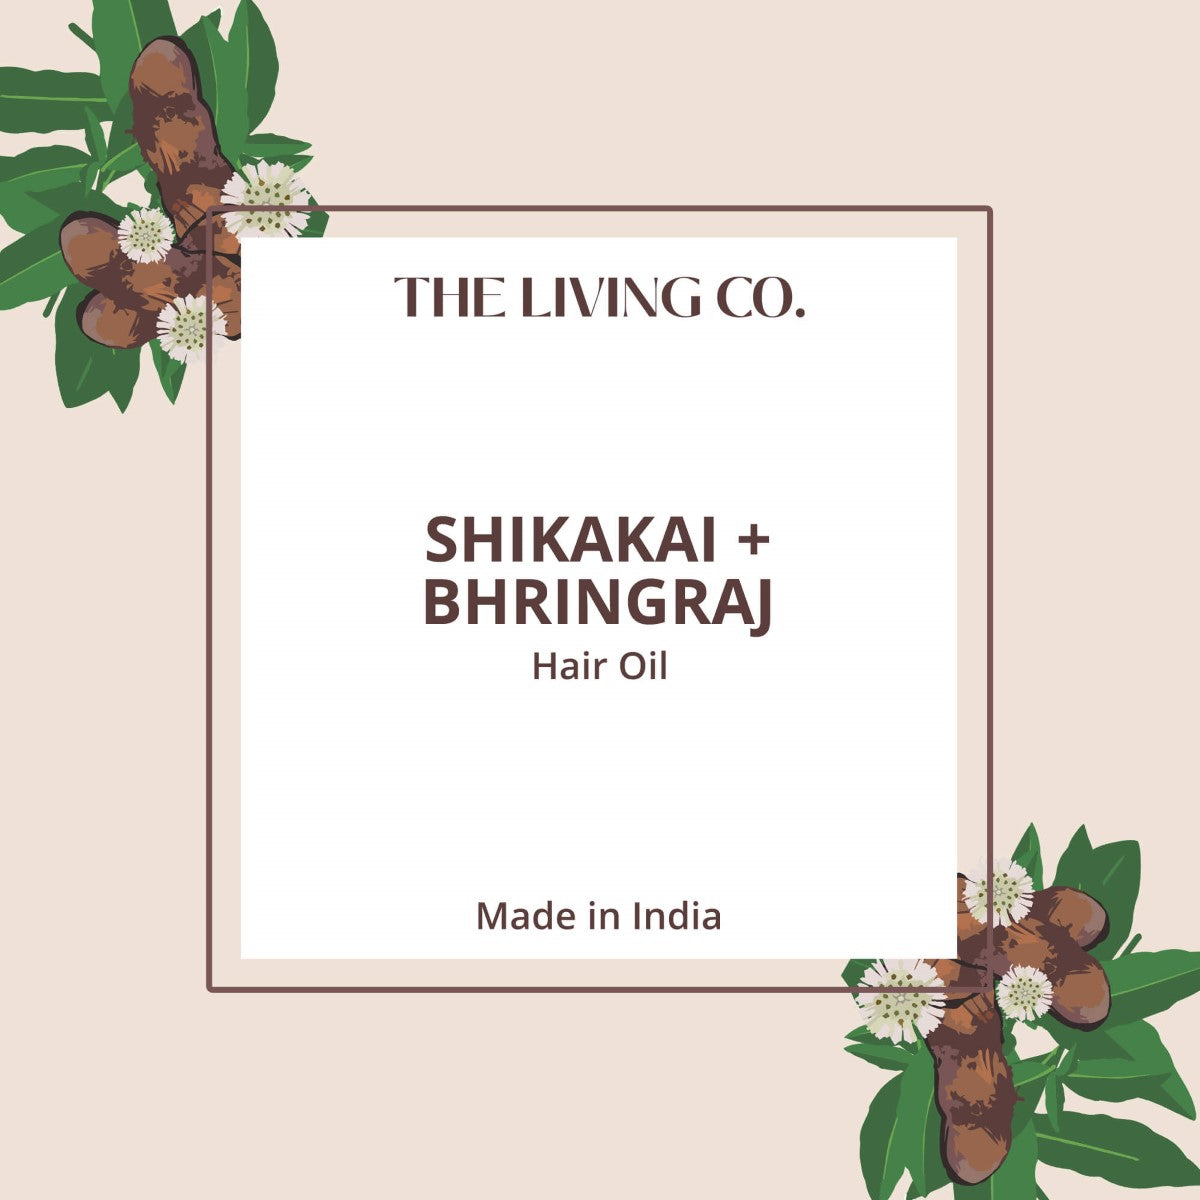 Shikakai + Bhringraj Hair Oil